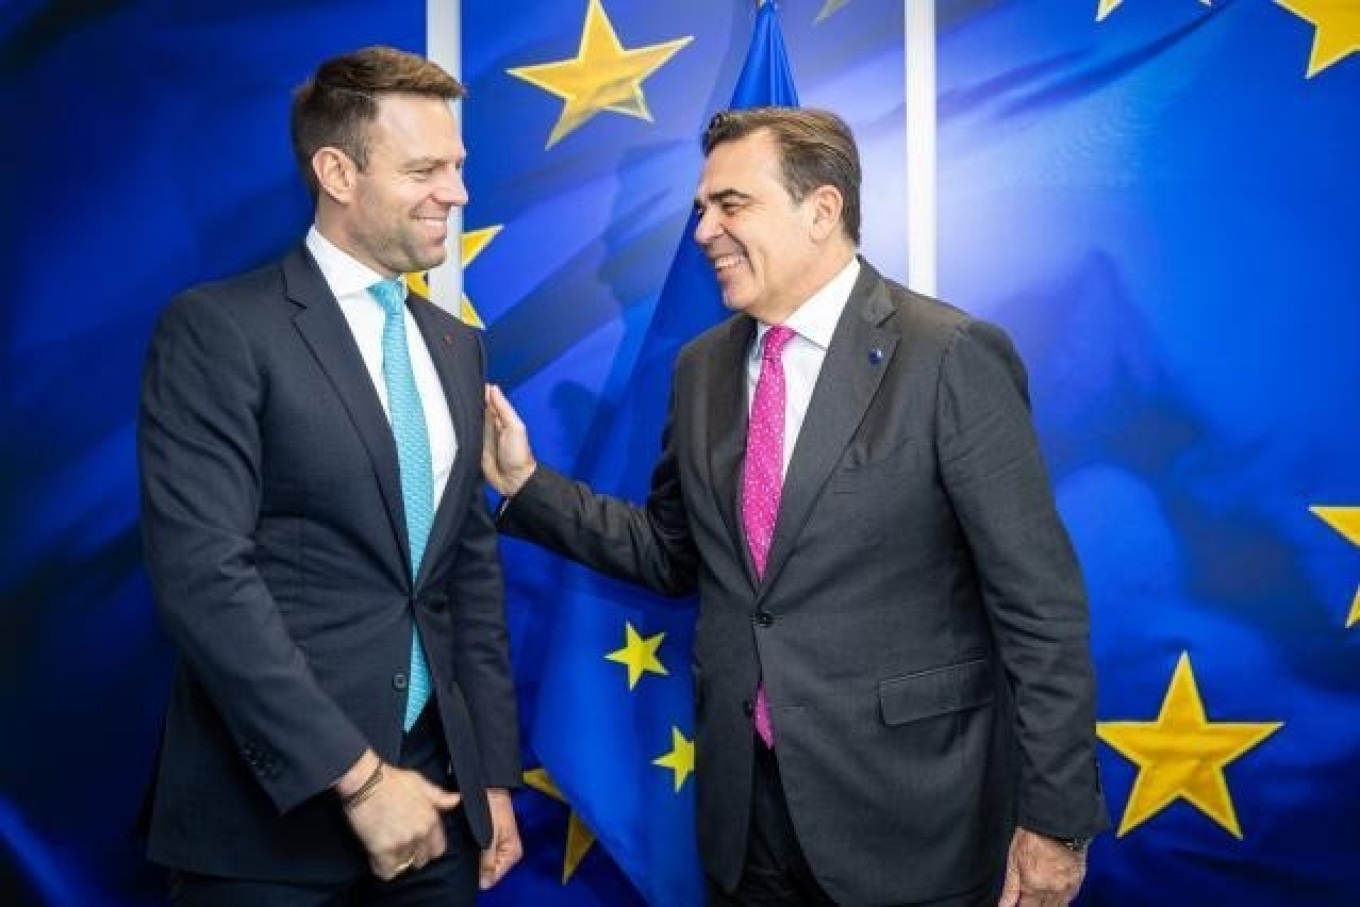 Κασσελάκης: «Ο ΣΥΡΙΖΑ περήφανο και ενεργό μέλος της ευρωομάδας της Αριστεράς και γέφυρα με Σοσιαλιστές και Πράσινους»